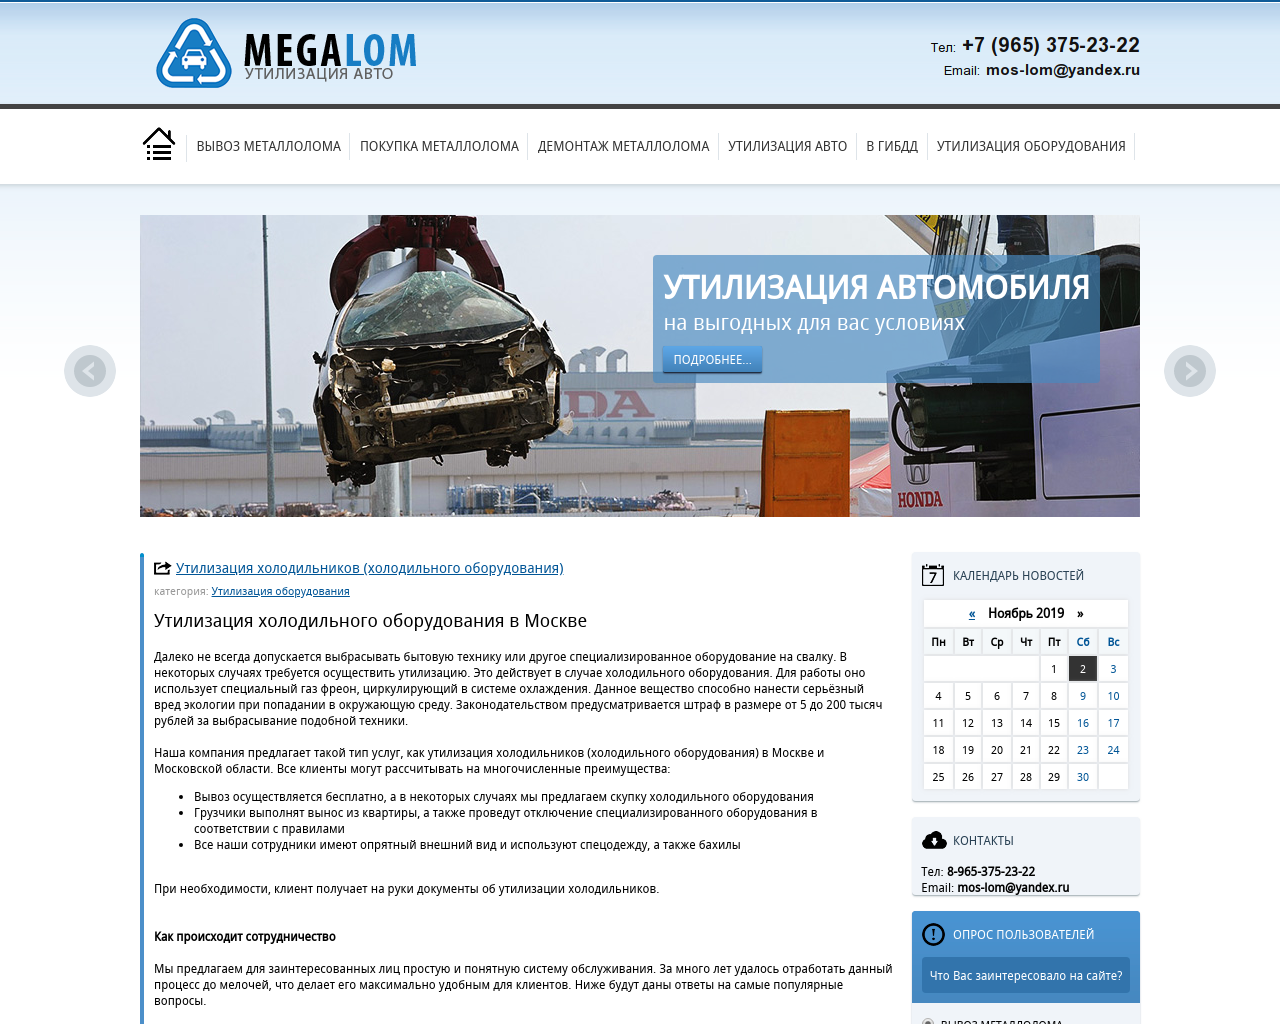 Изображение сайта megalom.ru в разрешении 1280x1024